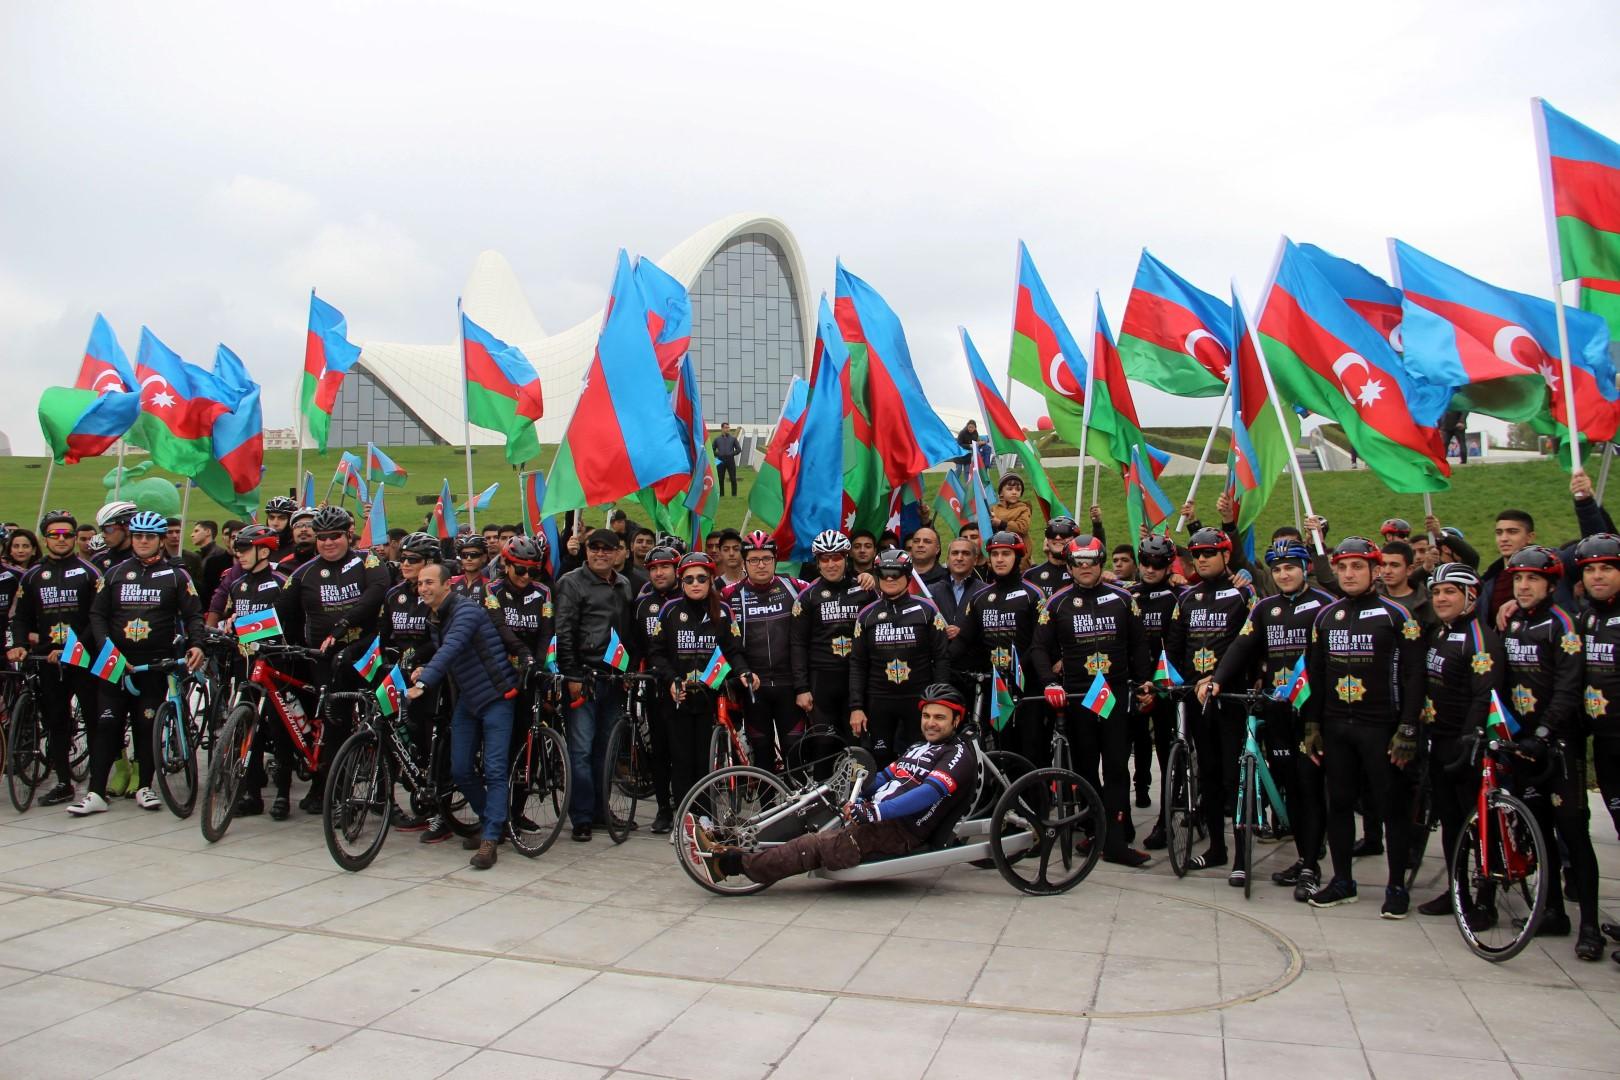 Bakıda veloyürüş:  Mədət Quliyev velosiped sürdü (FOTO)